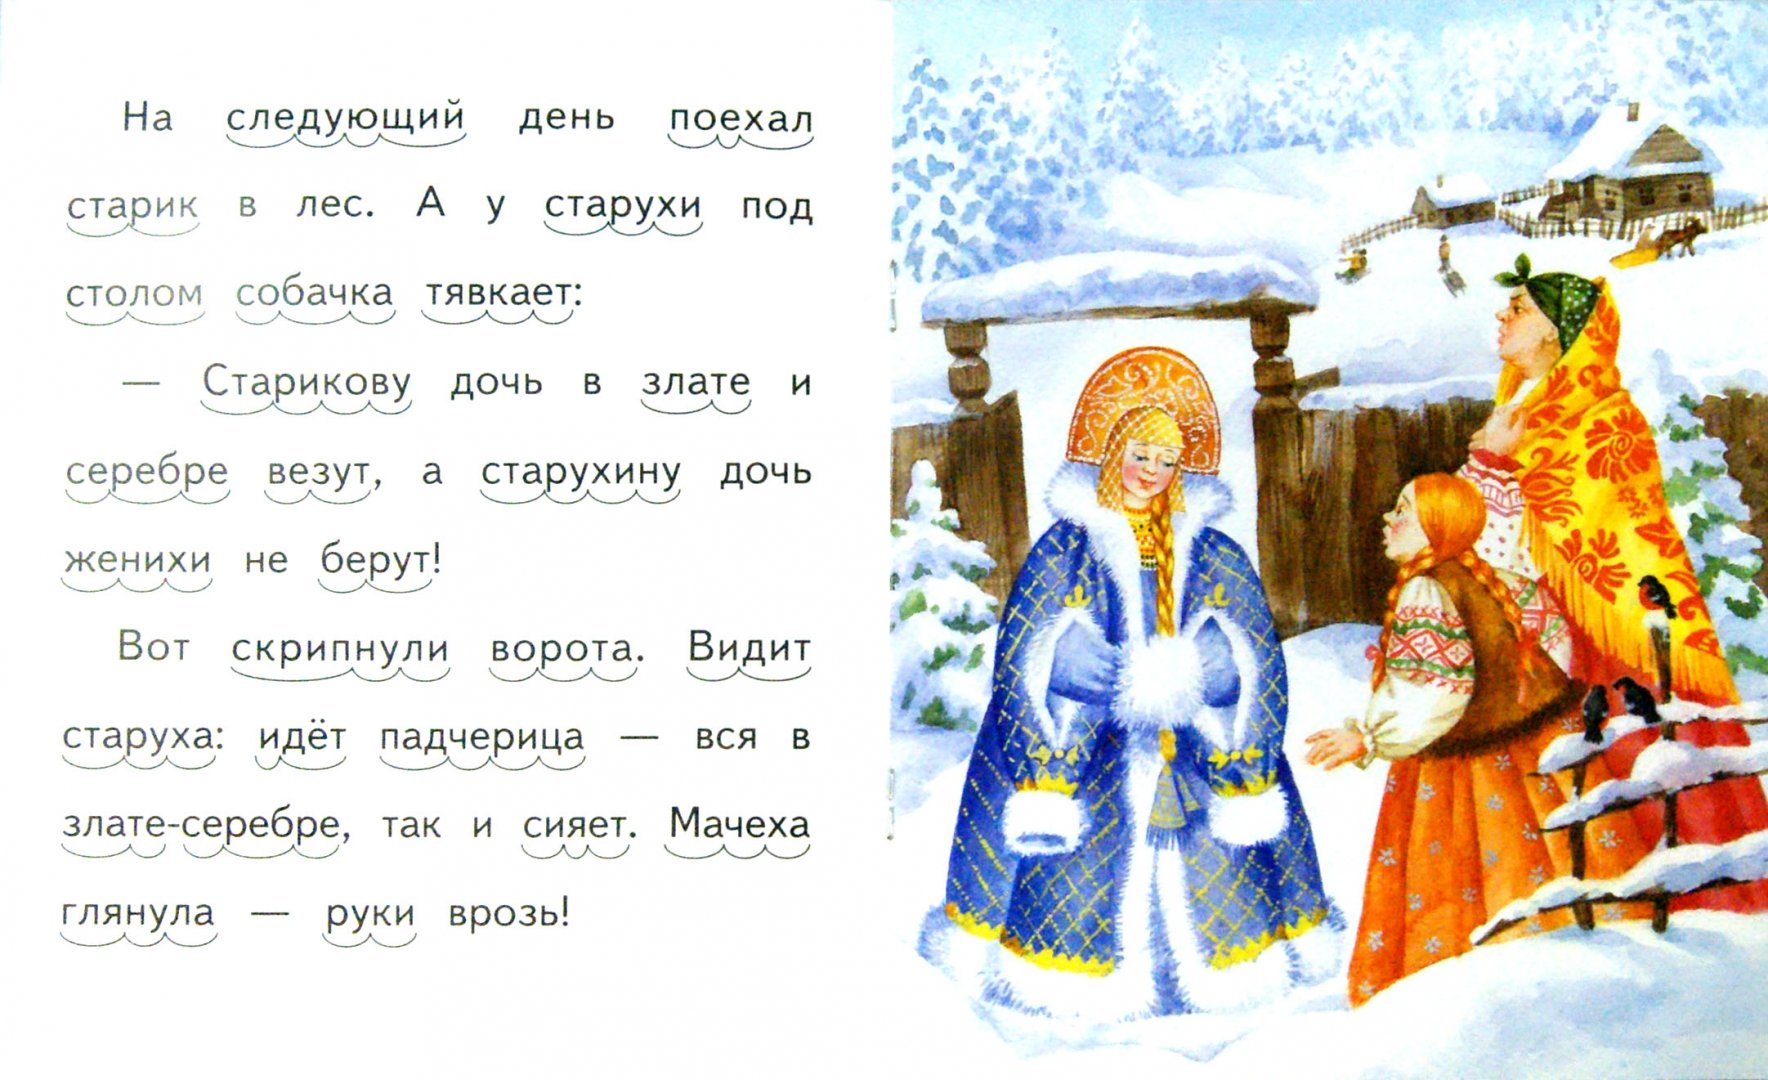 Иллюстрация 1 из 17 для Морозко | Лабиринт - книги. Источник: Лабиринт